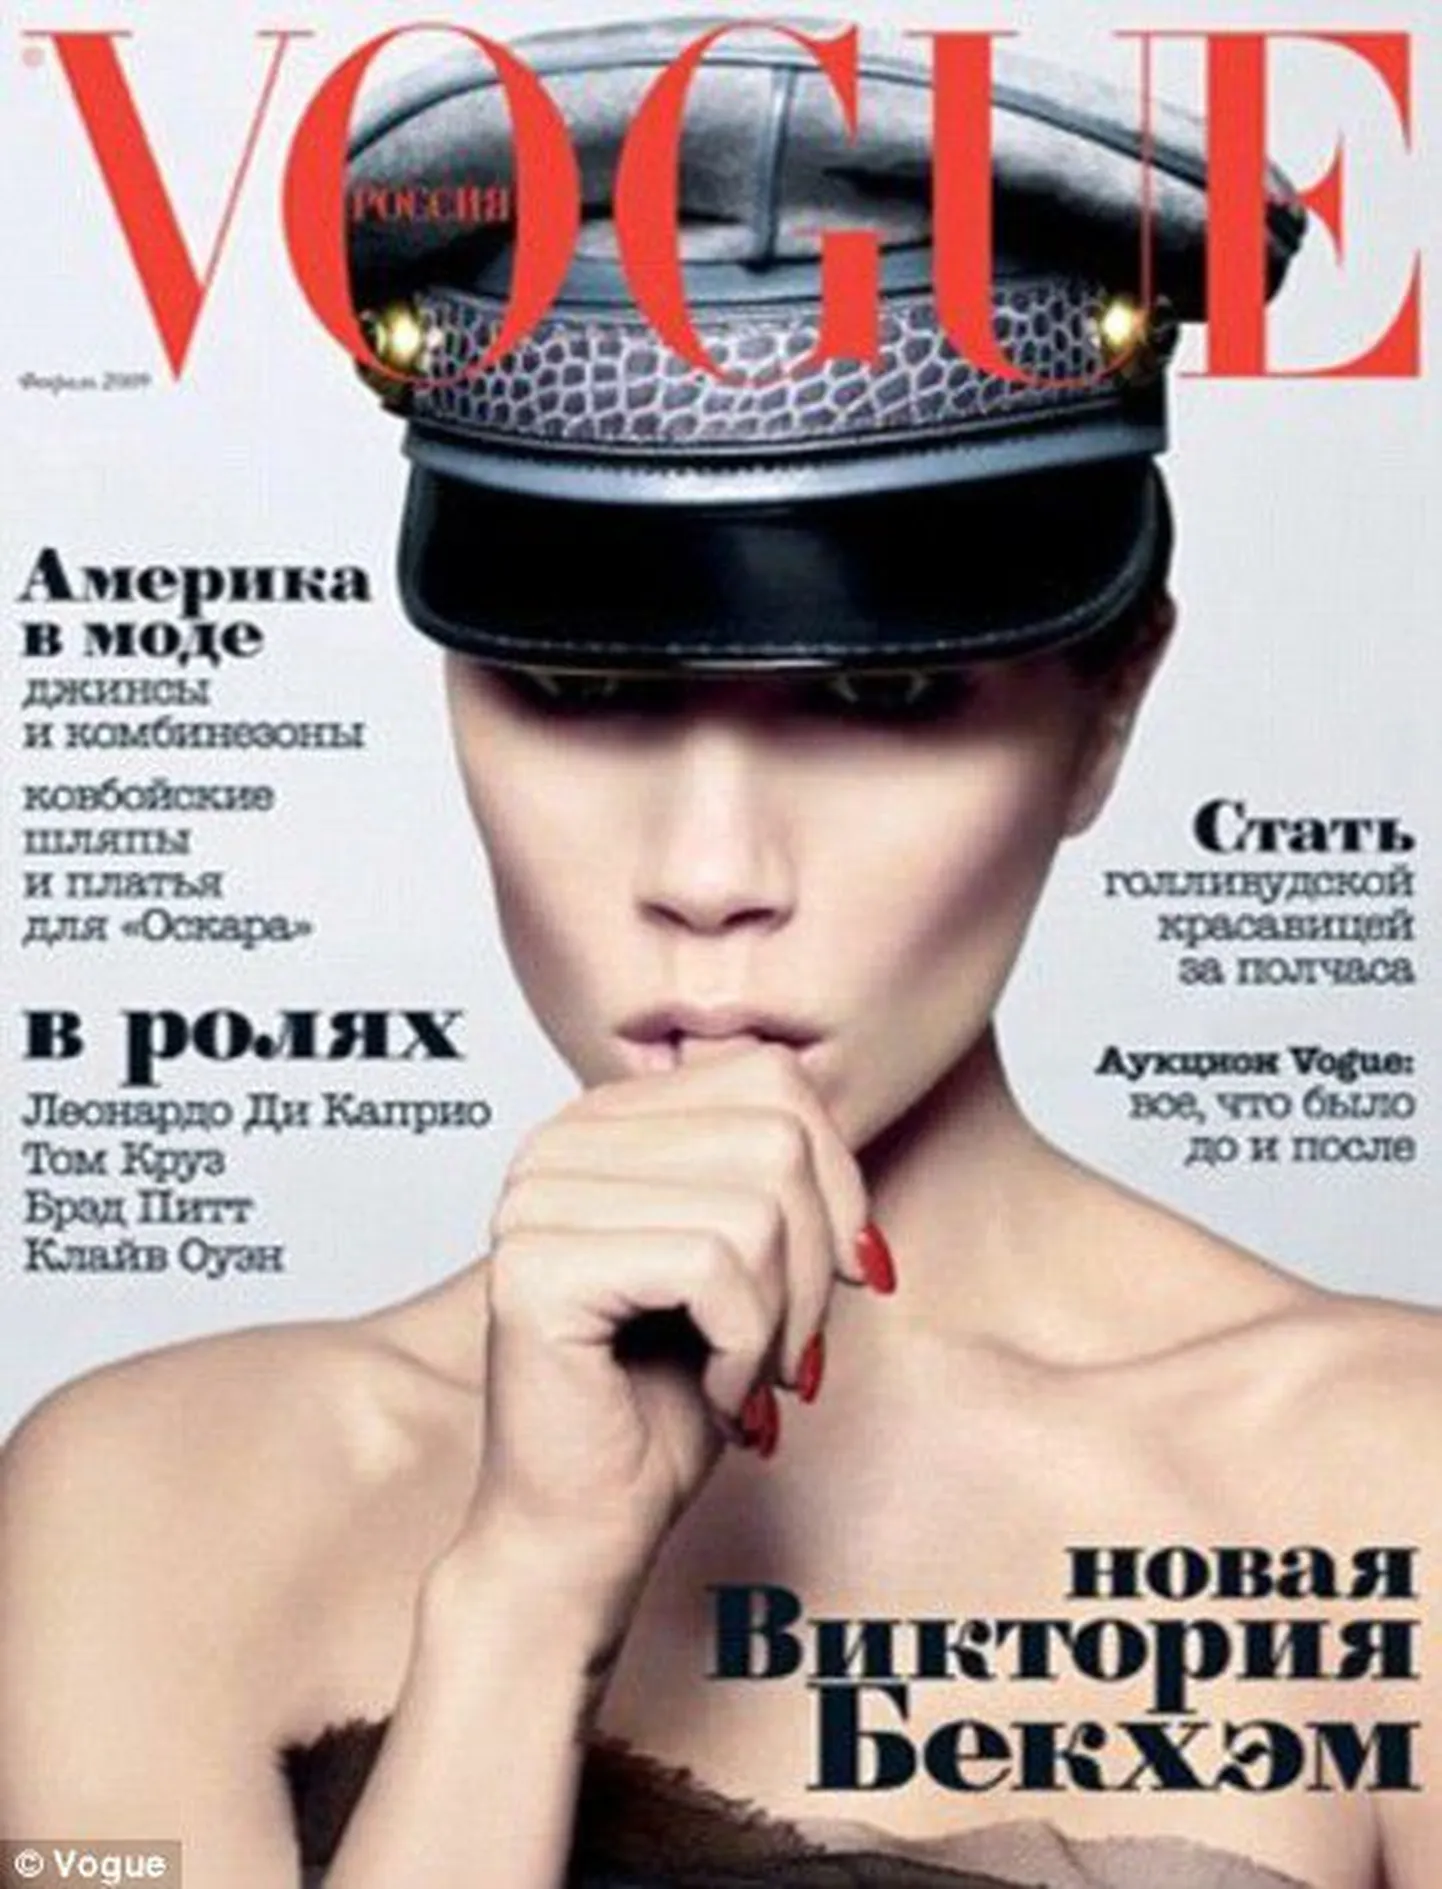 Обложка журнала Vogue.